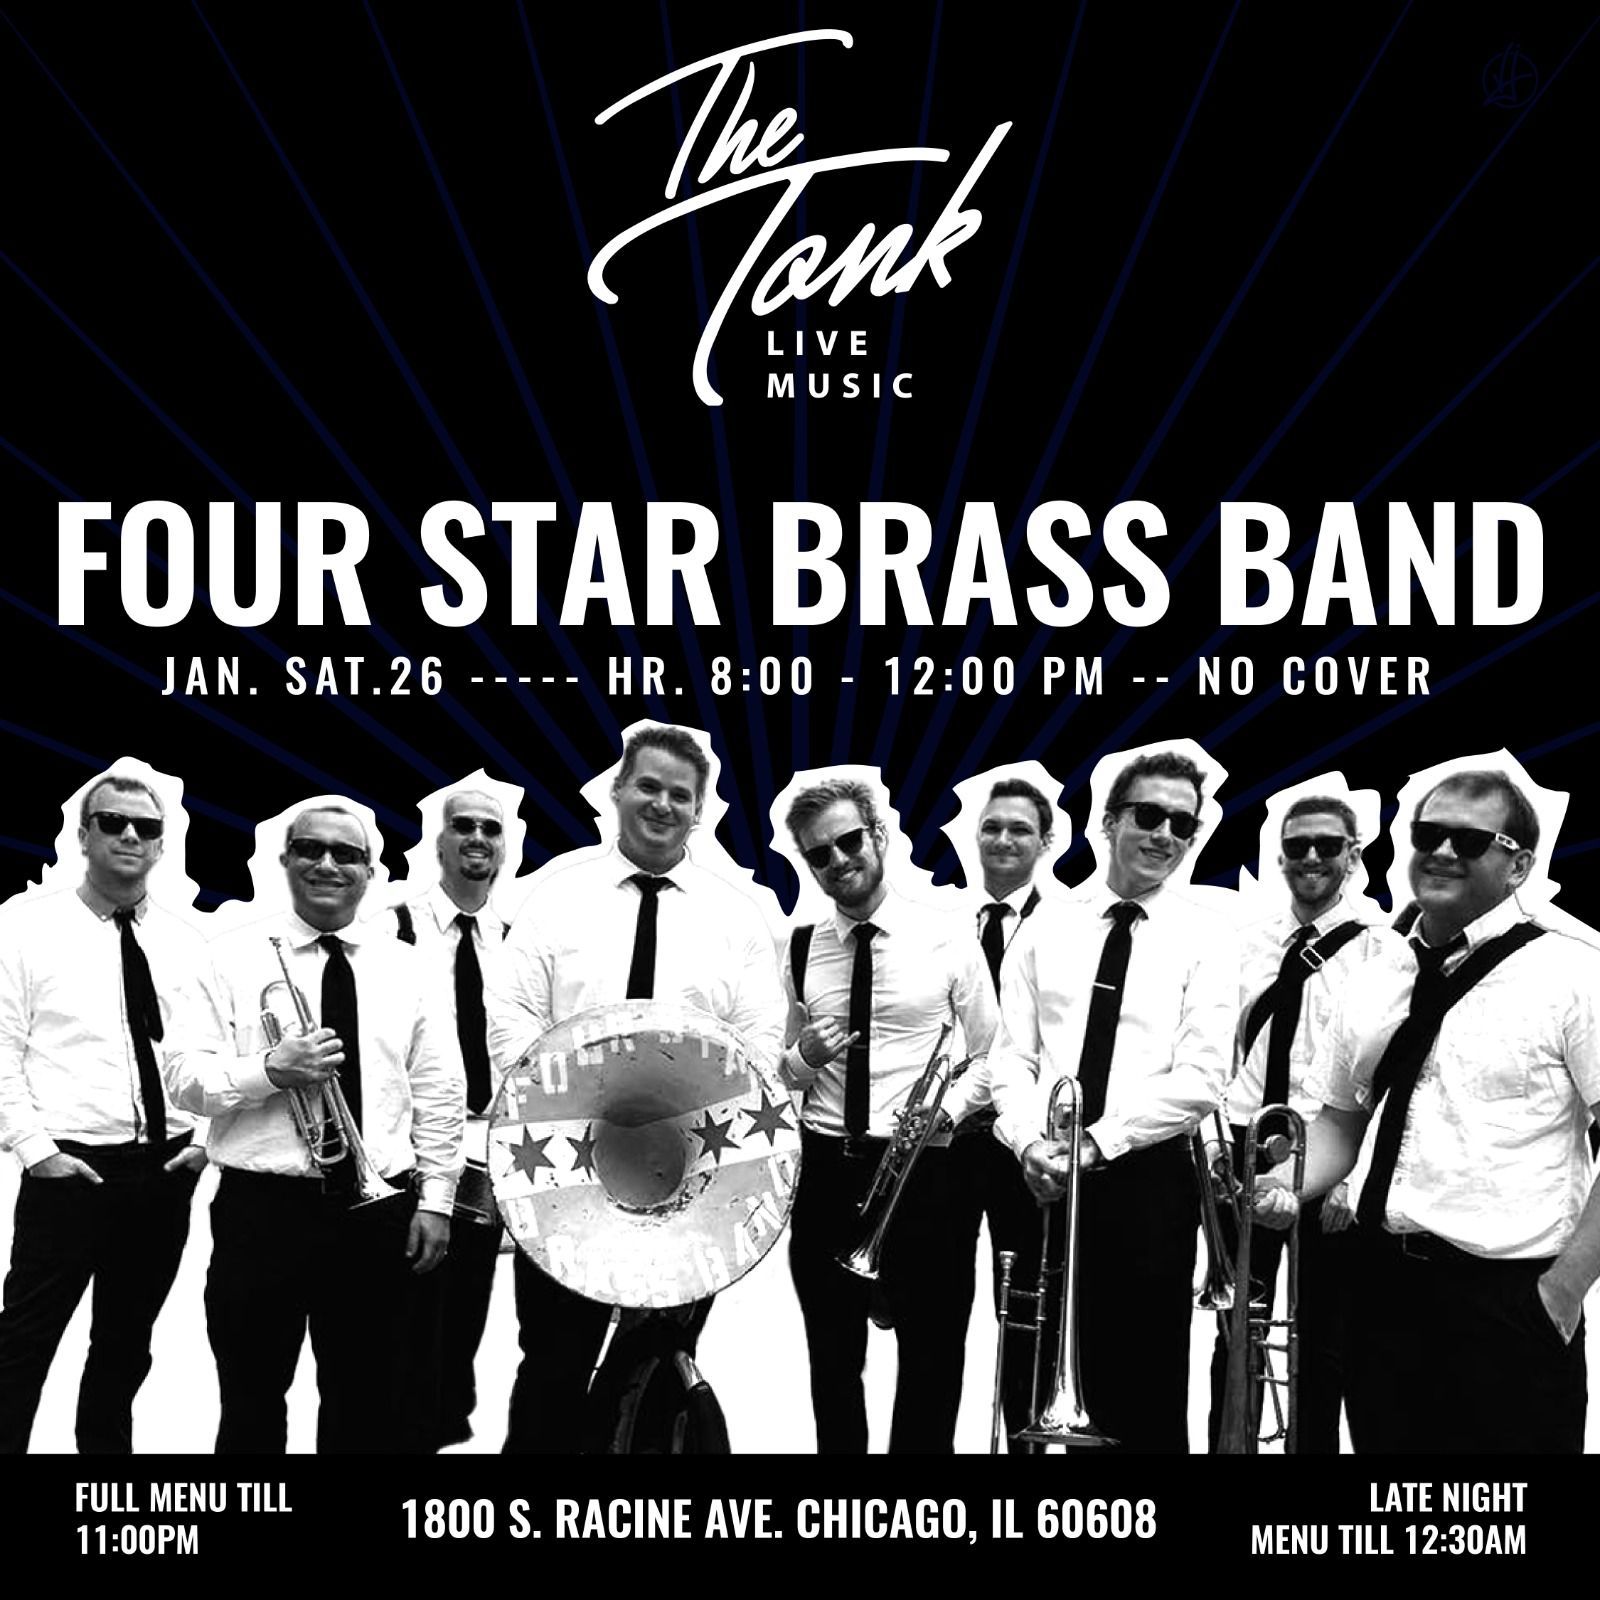 Four Star Brass Band artist poster